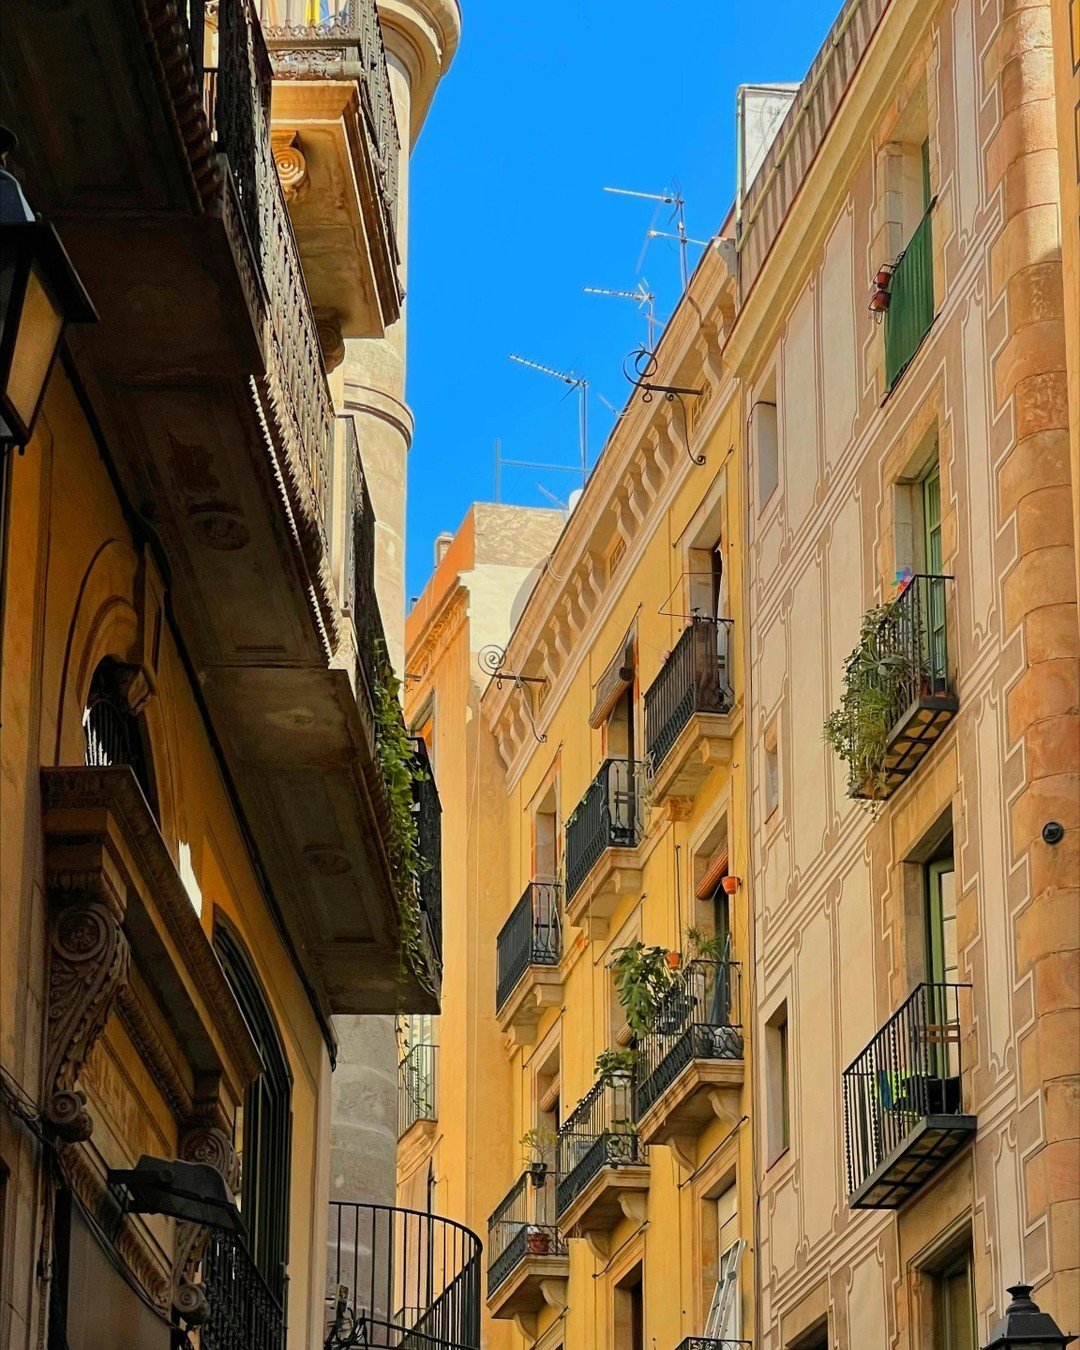 Barcelona, ¡la ciudad perfecta para pasear y disfrutar del buen tiempo! Sus calles llenas de historia y encanto invitan a recorrerlas y descubrir cada rincón. ¿A quién más le gusta perderse por las calles de esta maravillosa ciudad?🌞🚶‍♂️
.
.
&iexcl